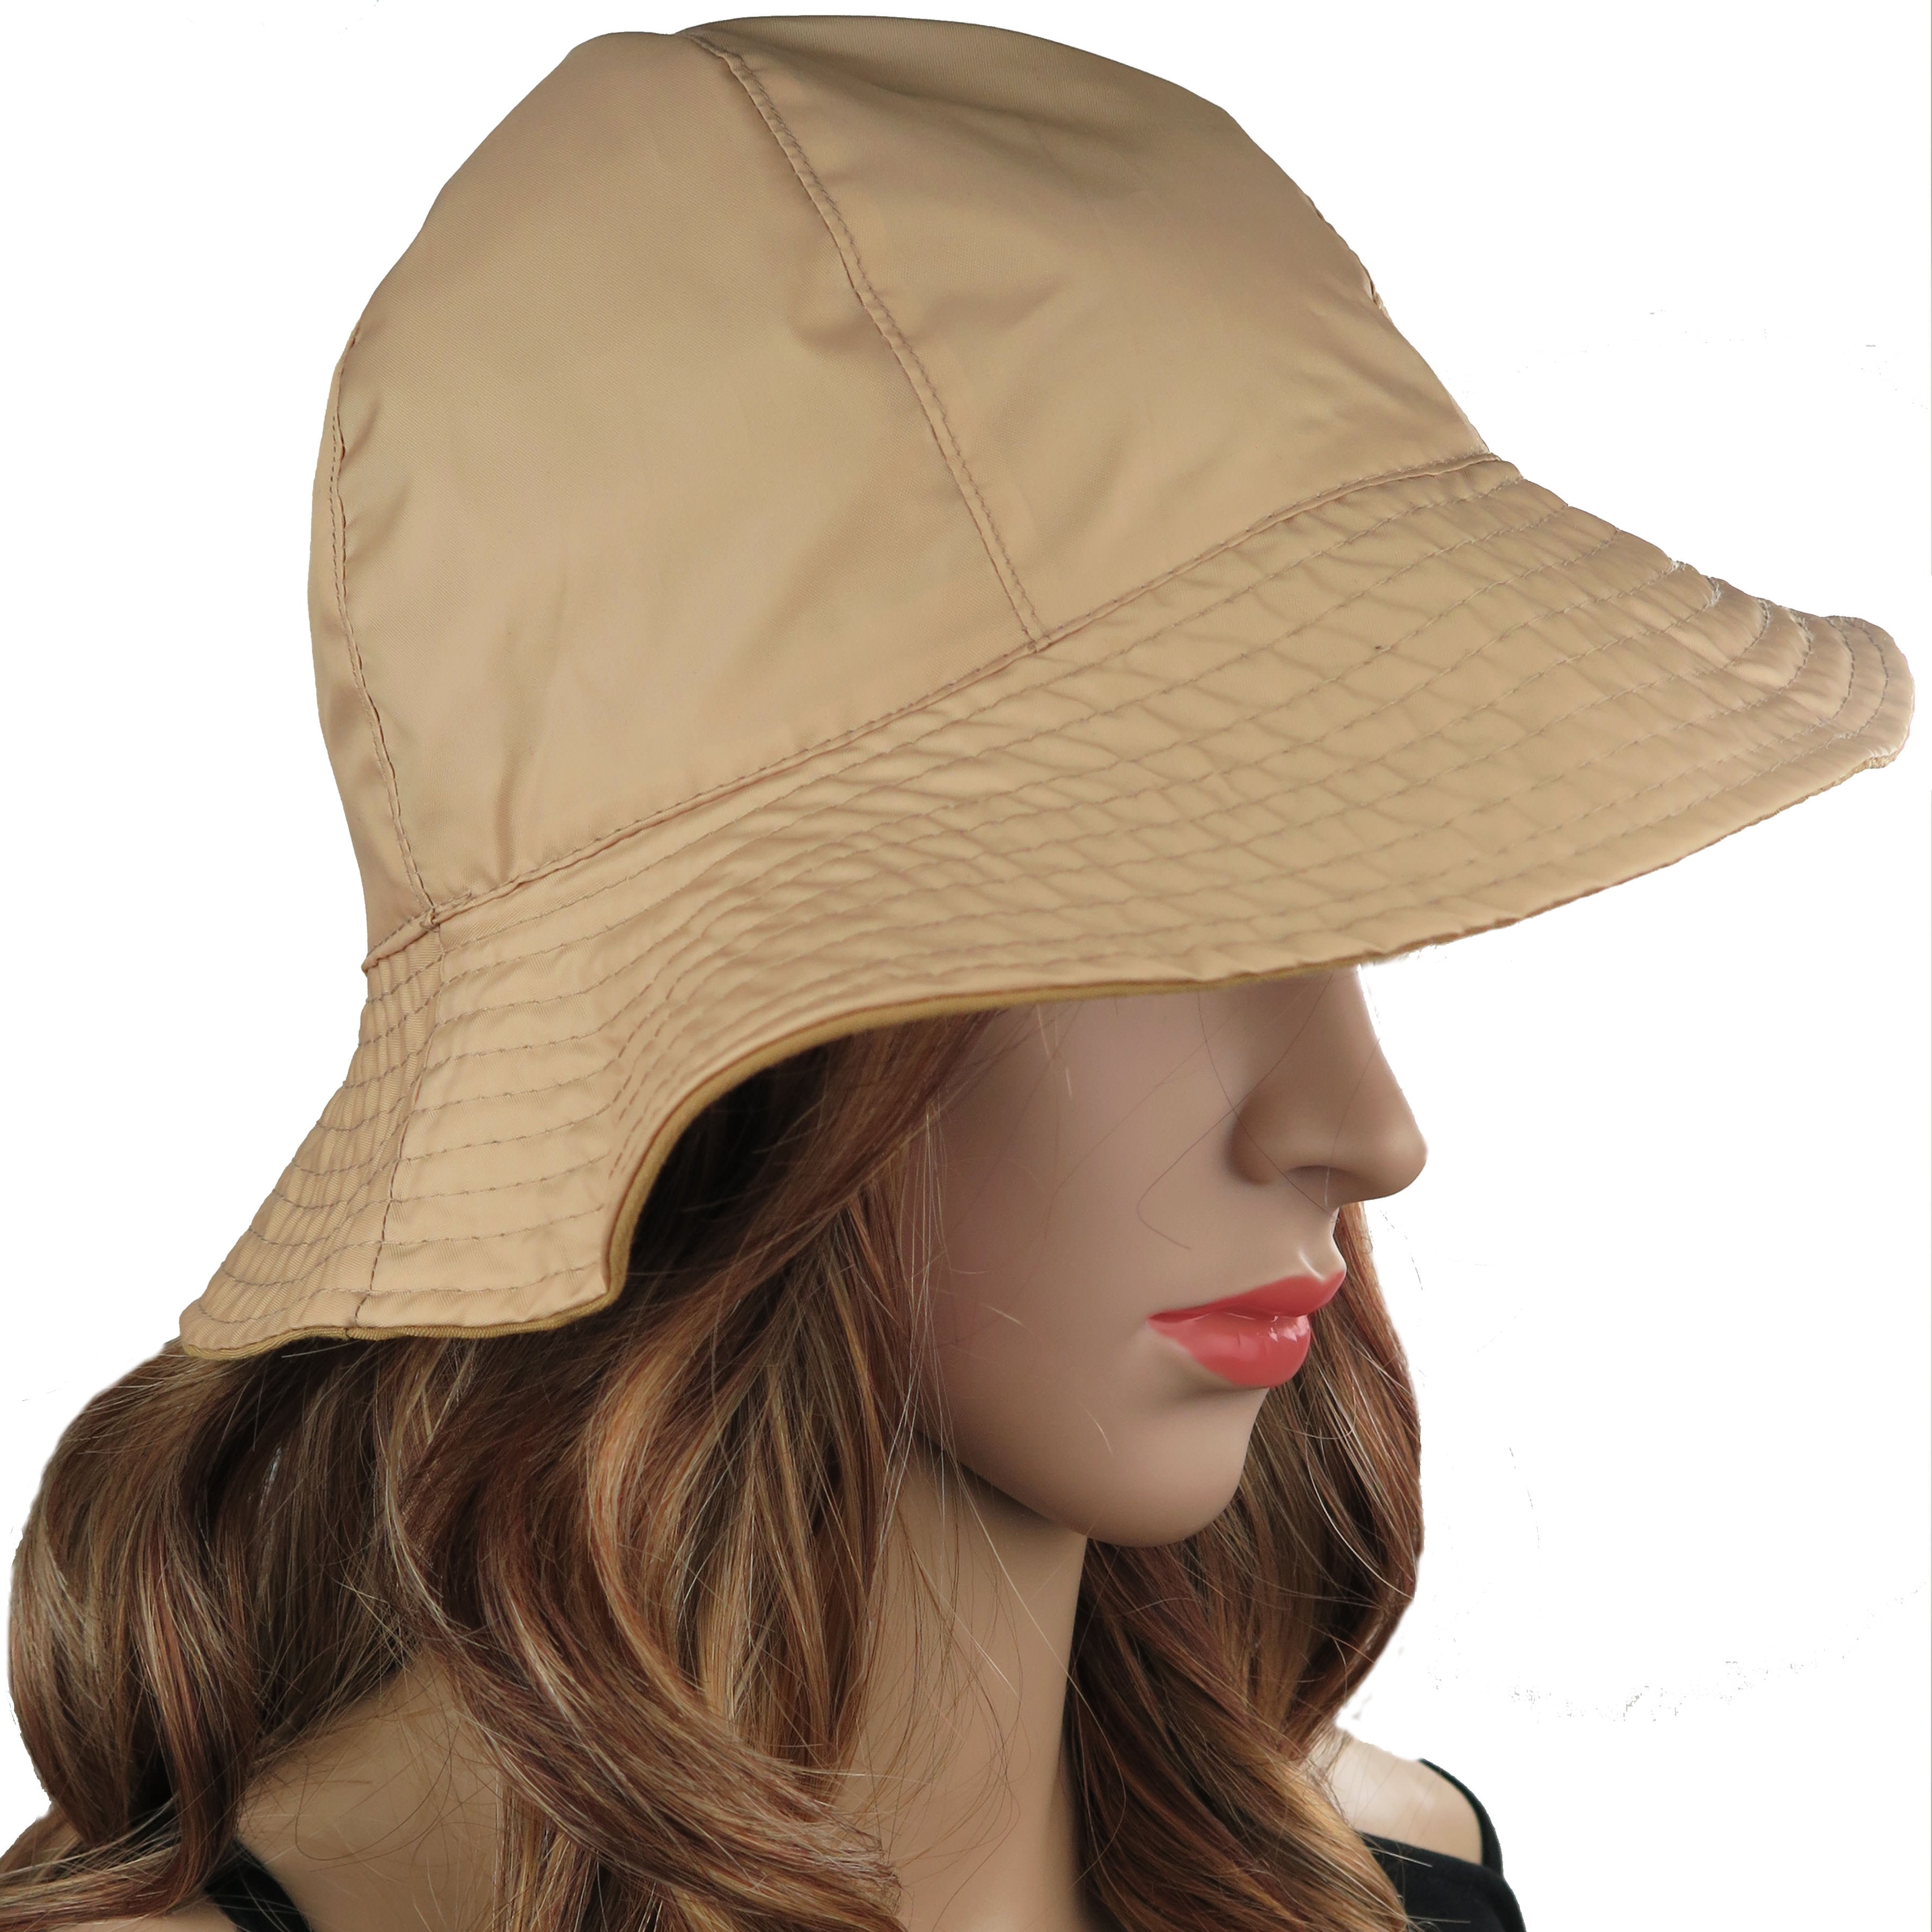 Debra Weitzner Rain Hat 2-in-1 Reversible Cloche Rain Bucket Hats Packable